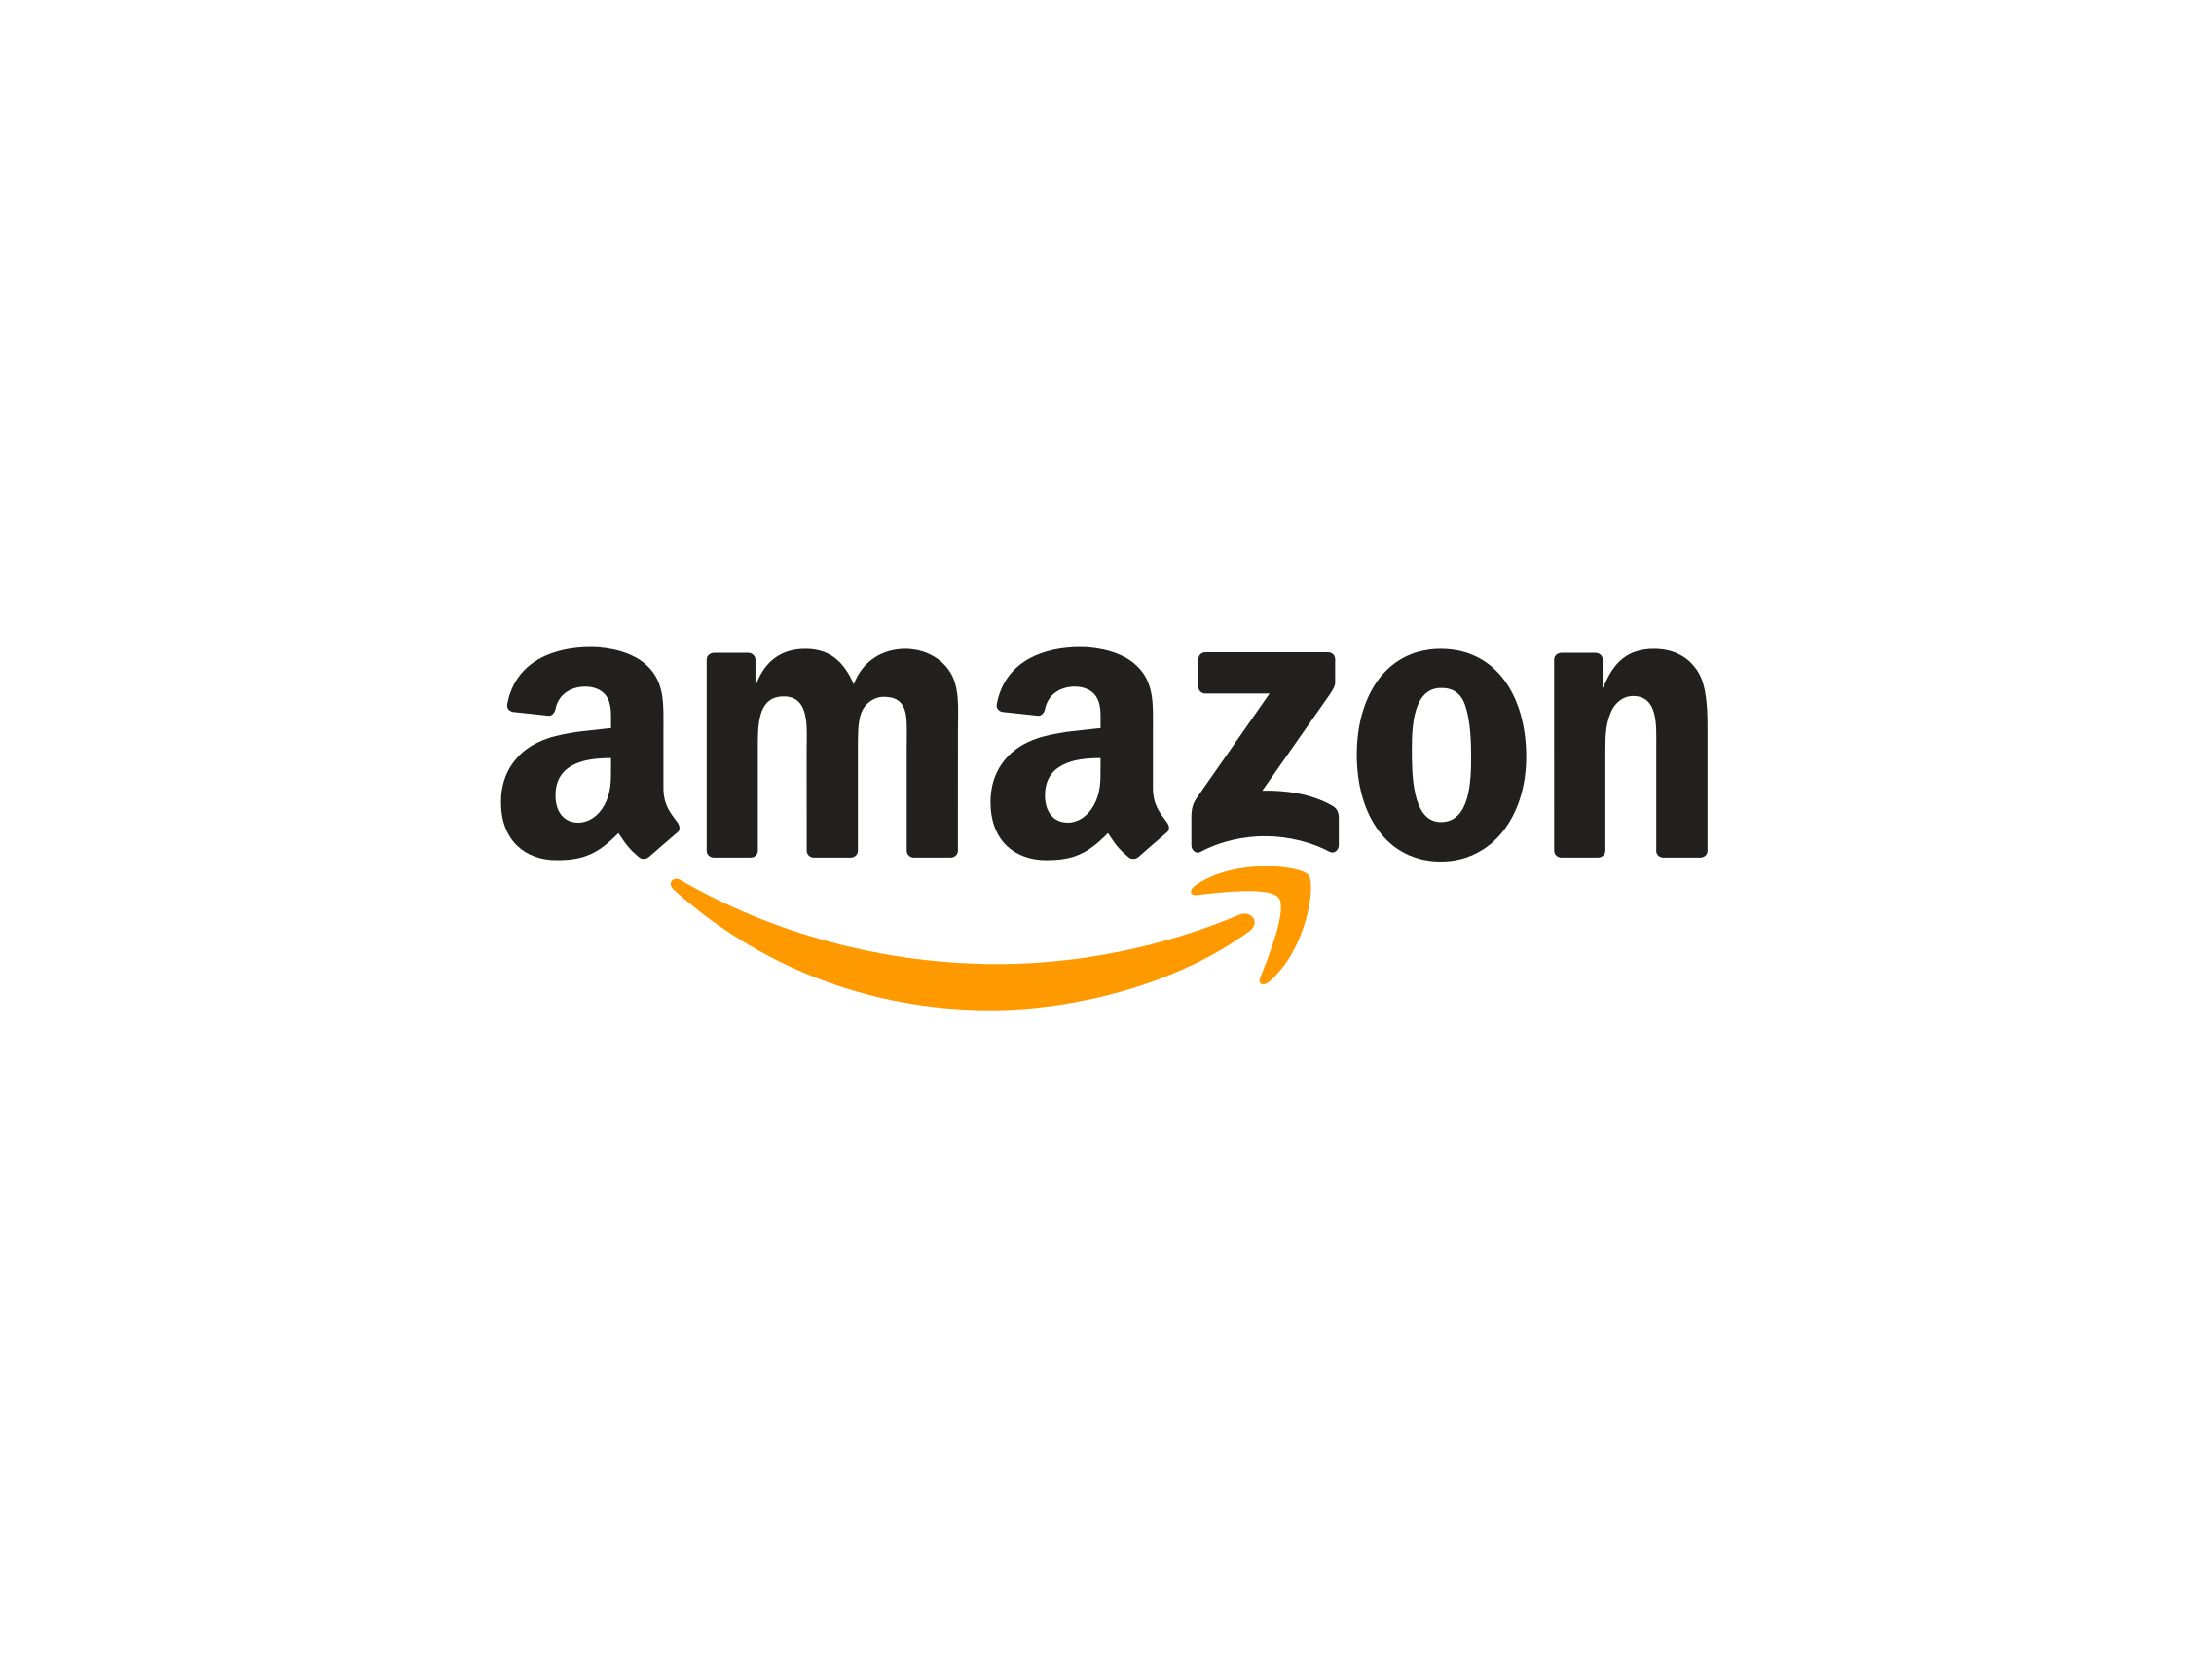 Amazong Logo - Amazon Logo